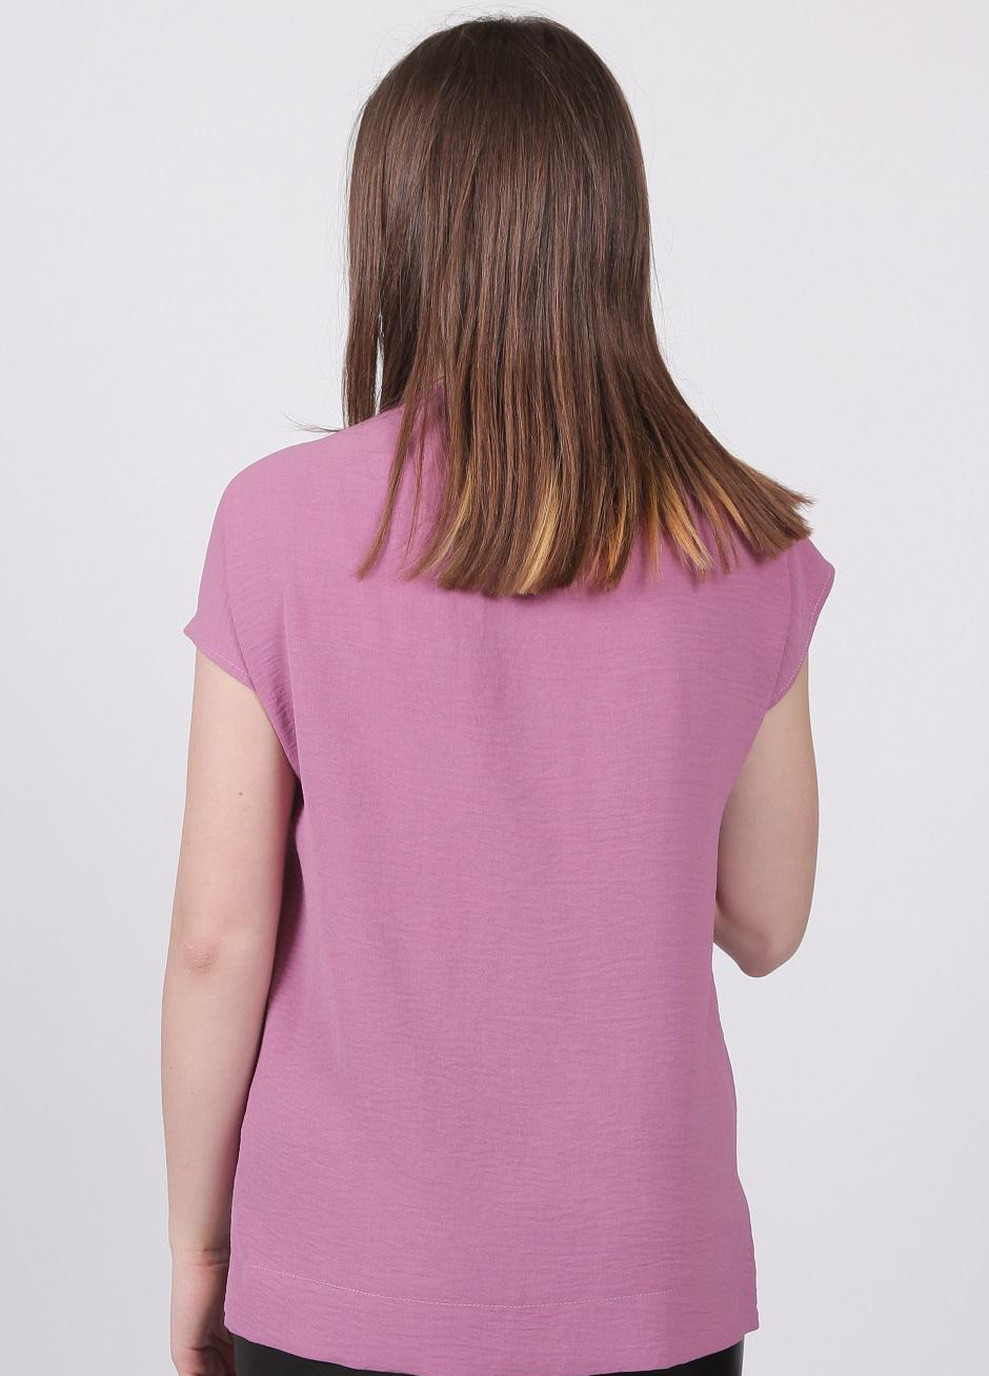 Розово-лиловая блузка женская 0071 однотонный жатка розово-сиреневая Актуаль